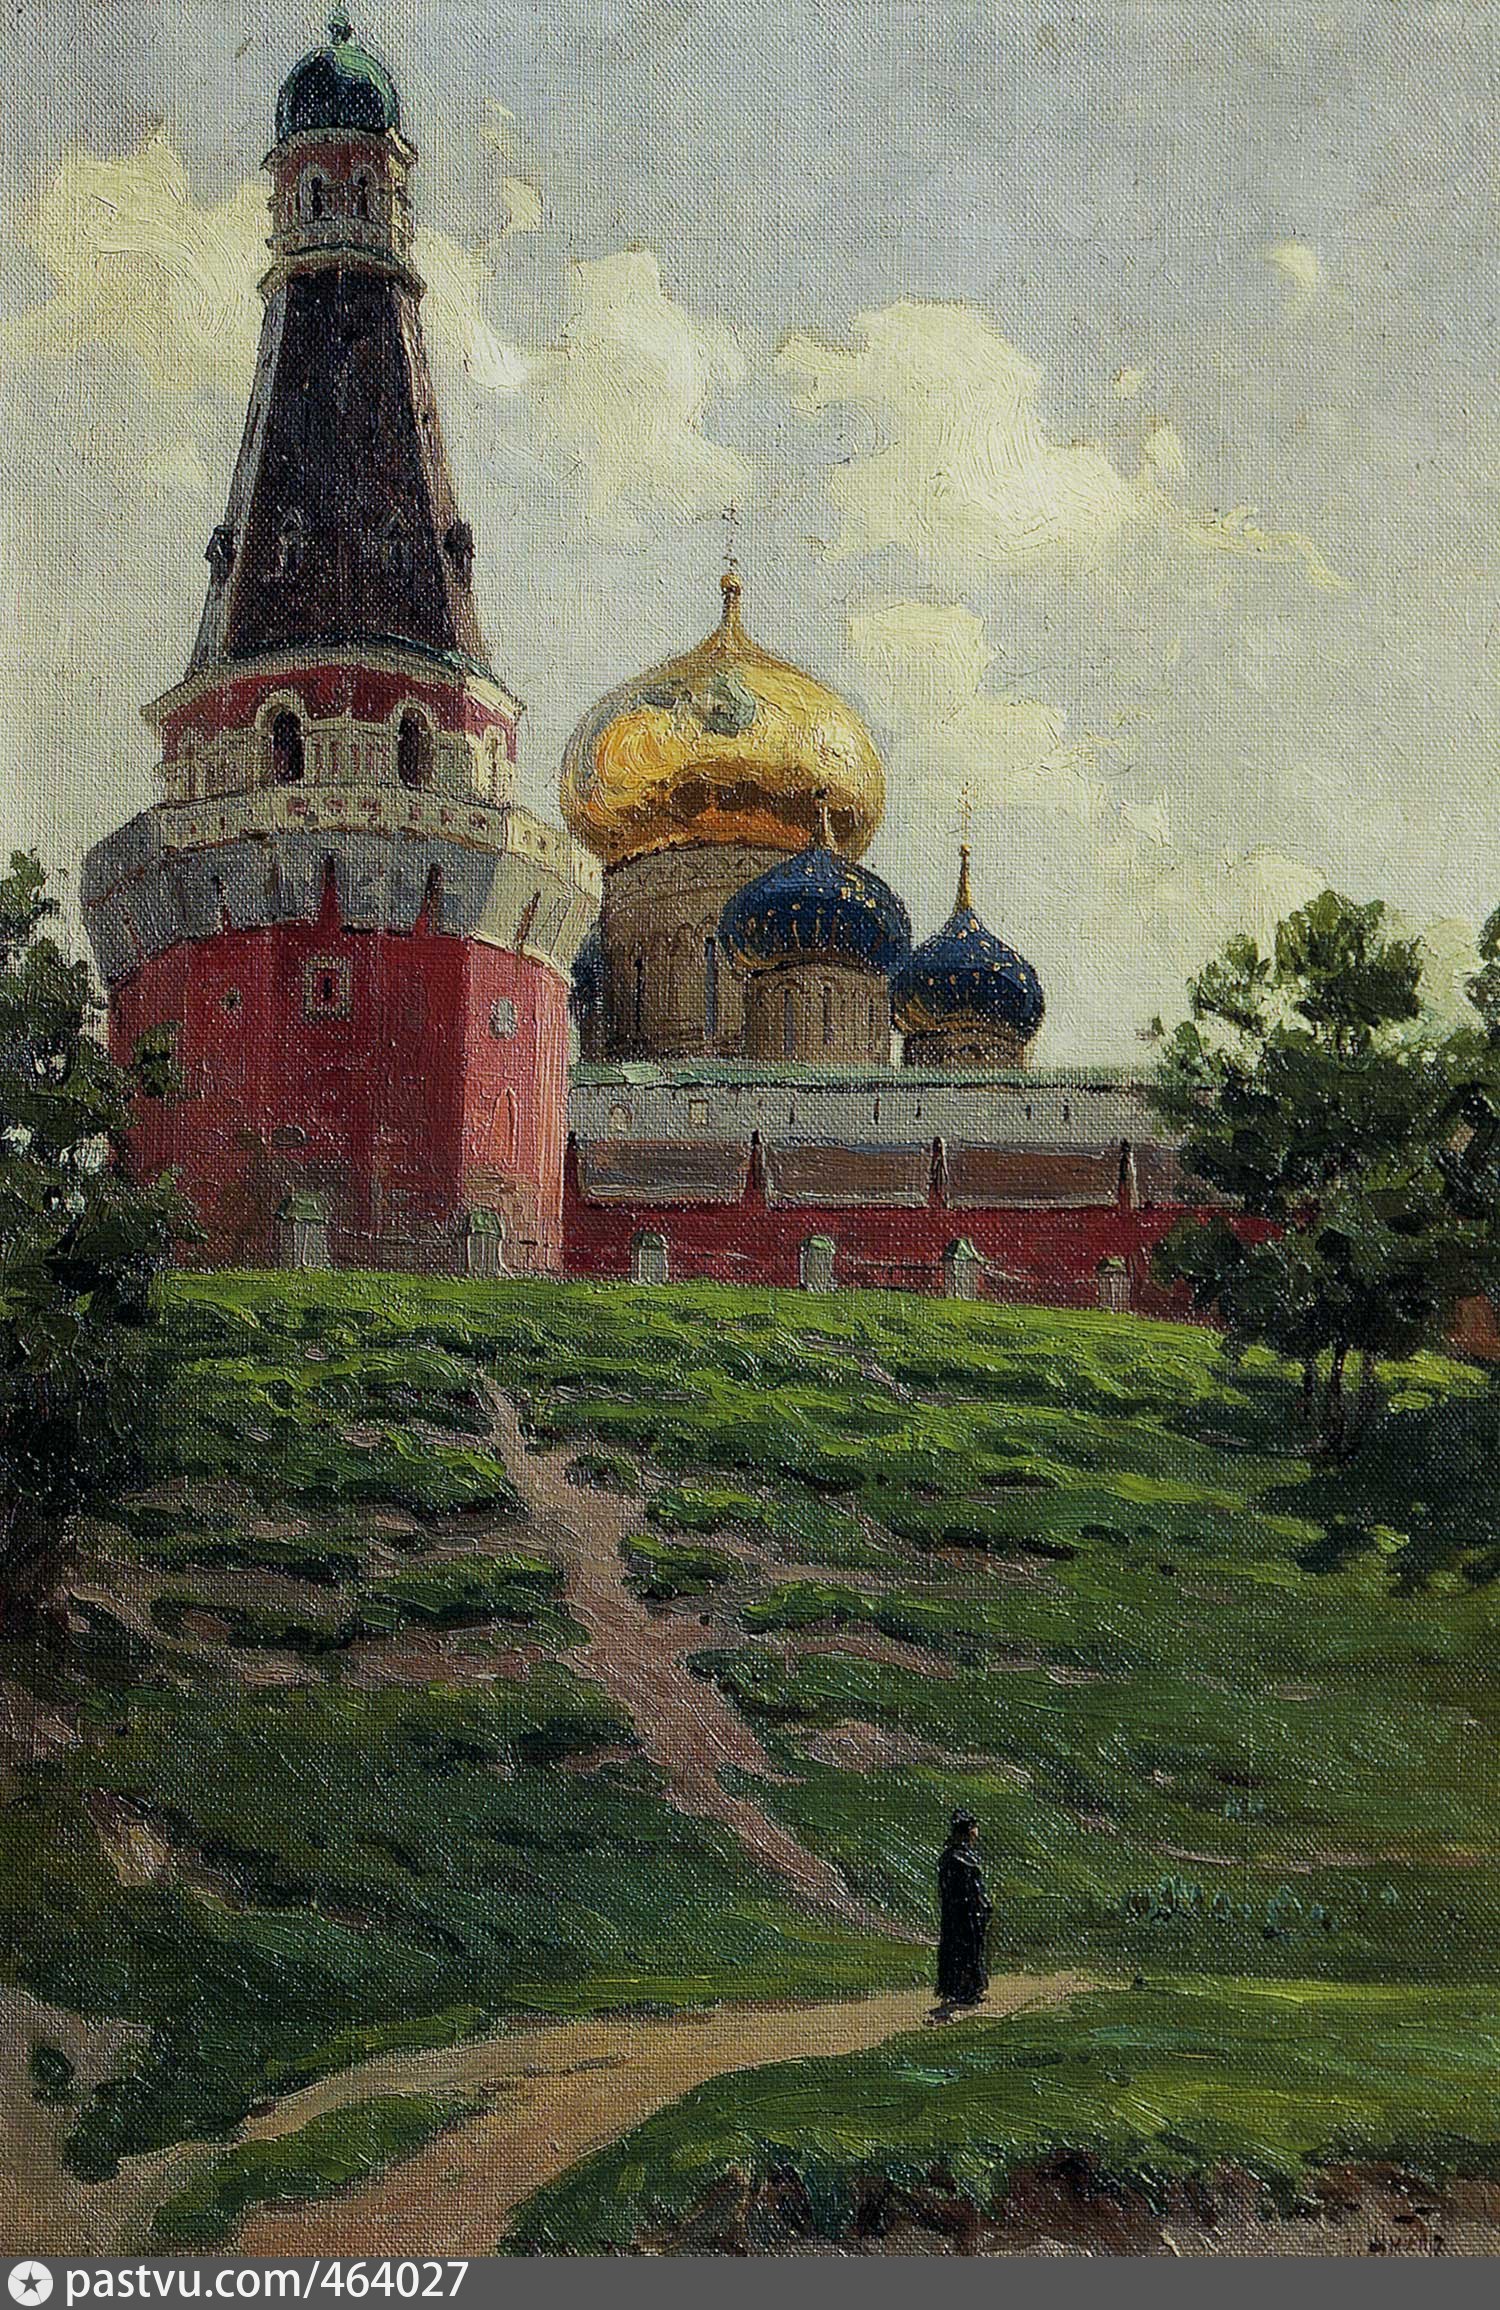 симонов монастырь москва